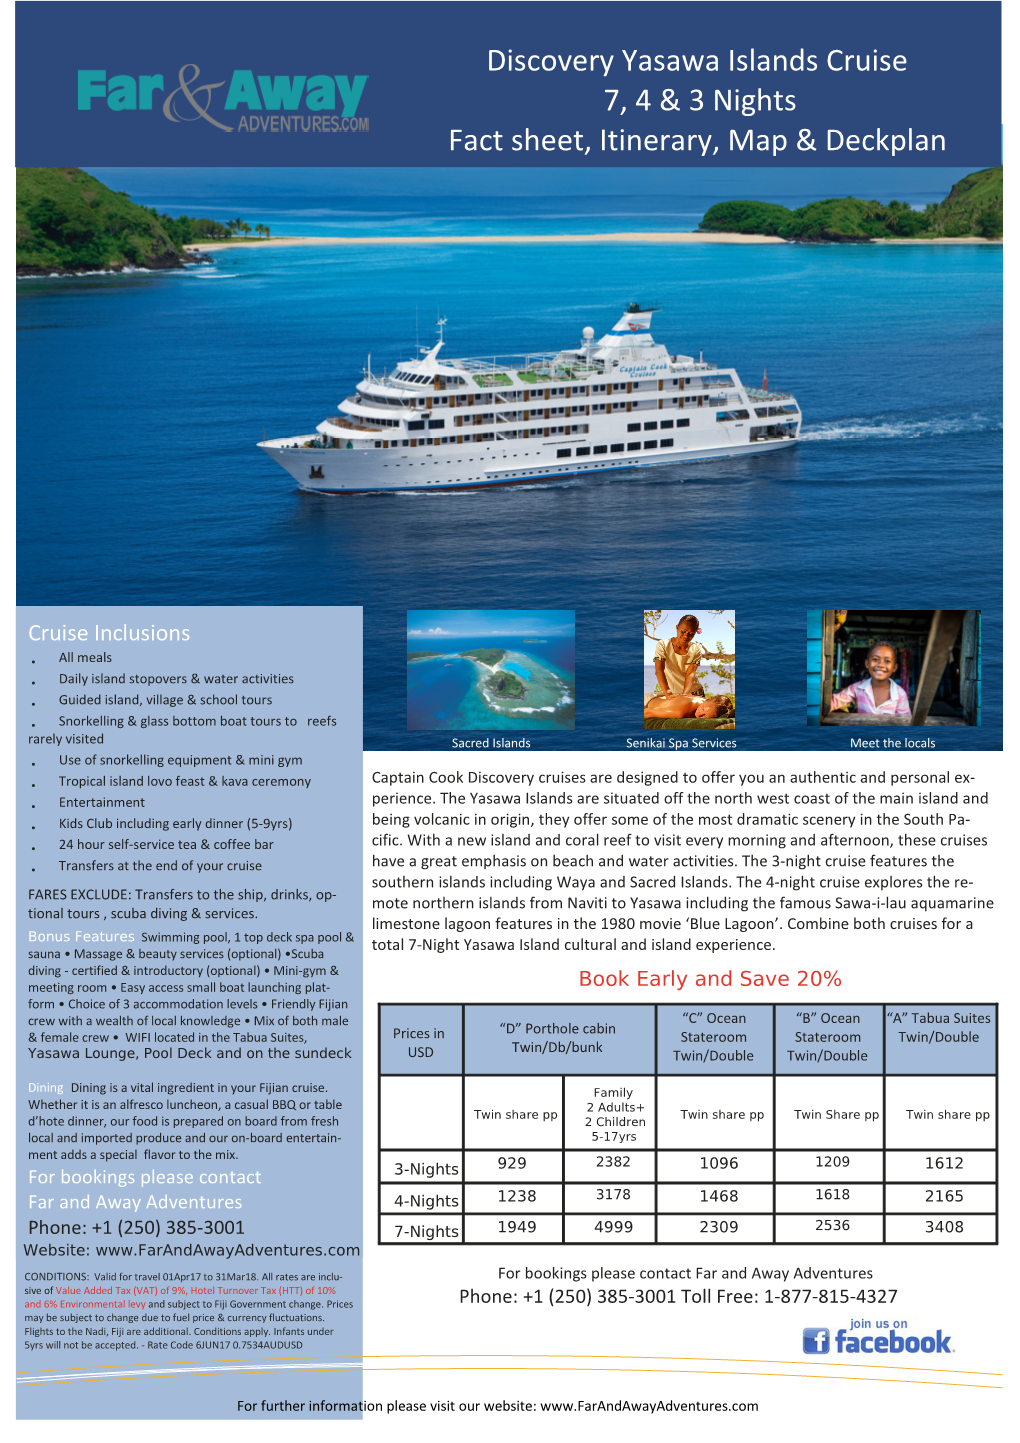 Discovery Yasawa Islands Cruise 7, 4 & 3 Nights Fact Sheet, Itinerary, Map